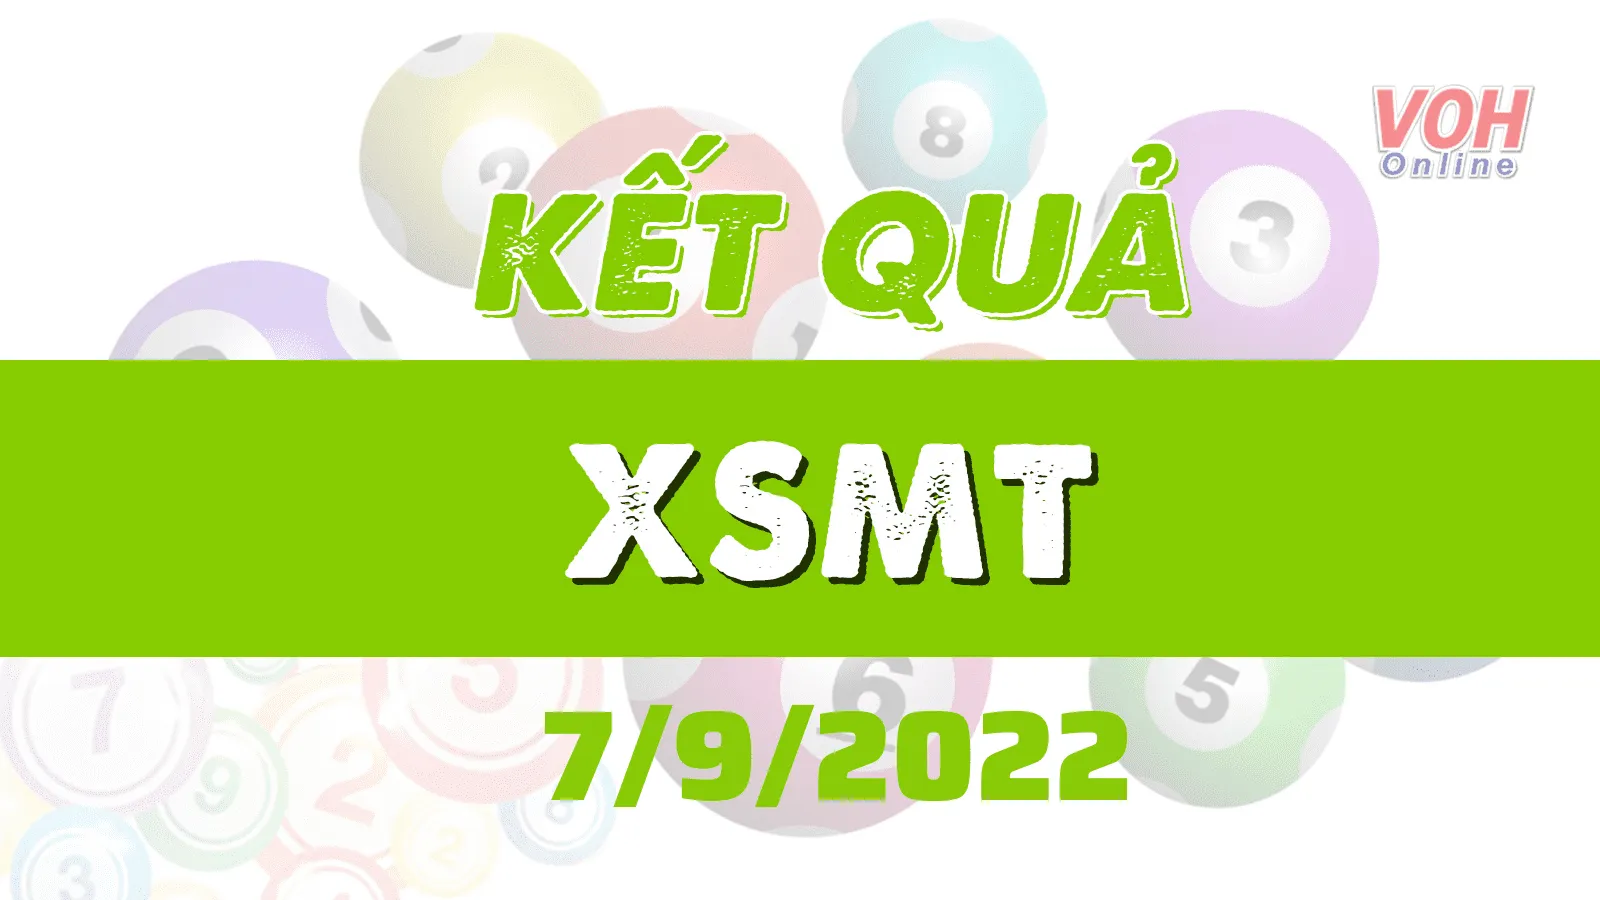 Xổ số miền Trung hôm nay, XSMT 7/9, SXMT 7/9/2022 - Kết quả xổ số ngày 7 tháng 9